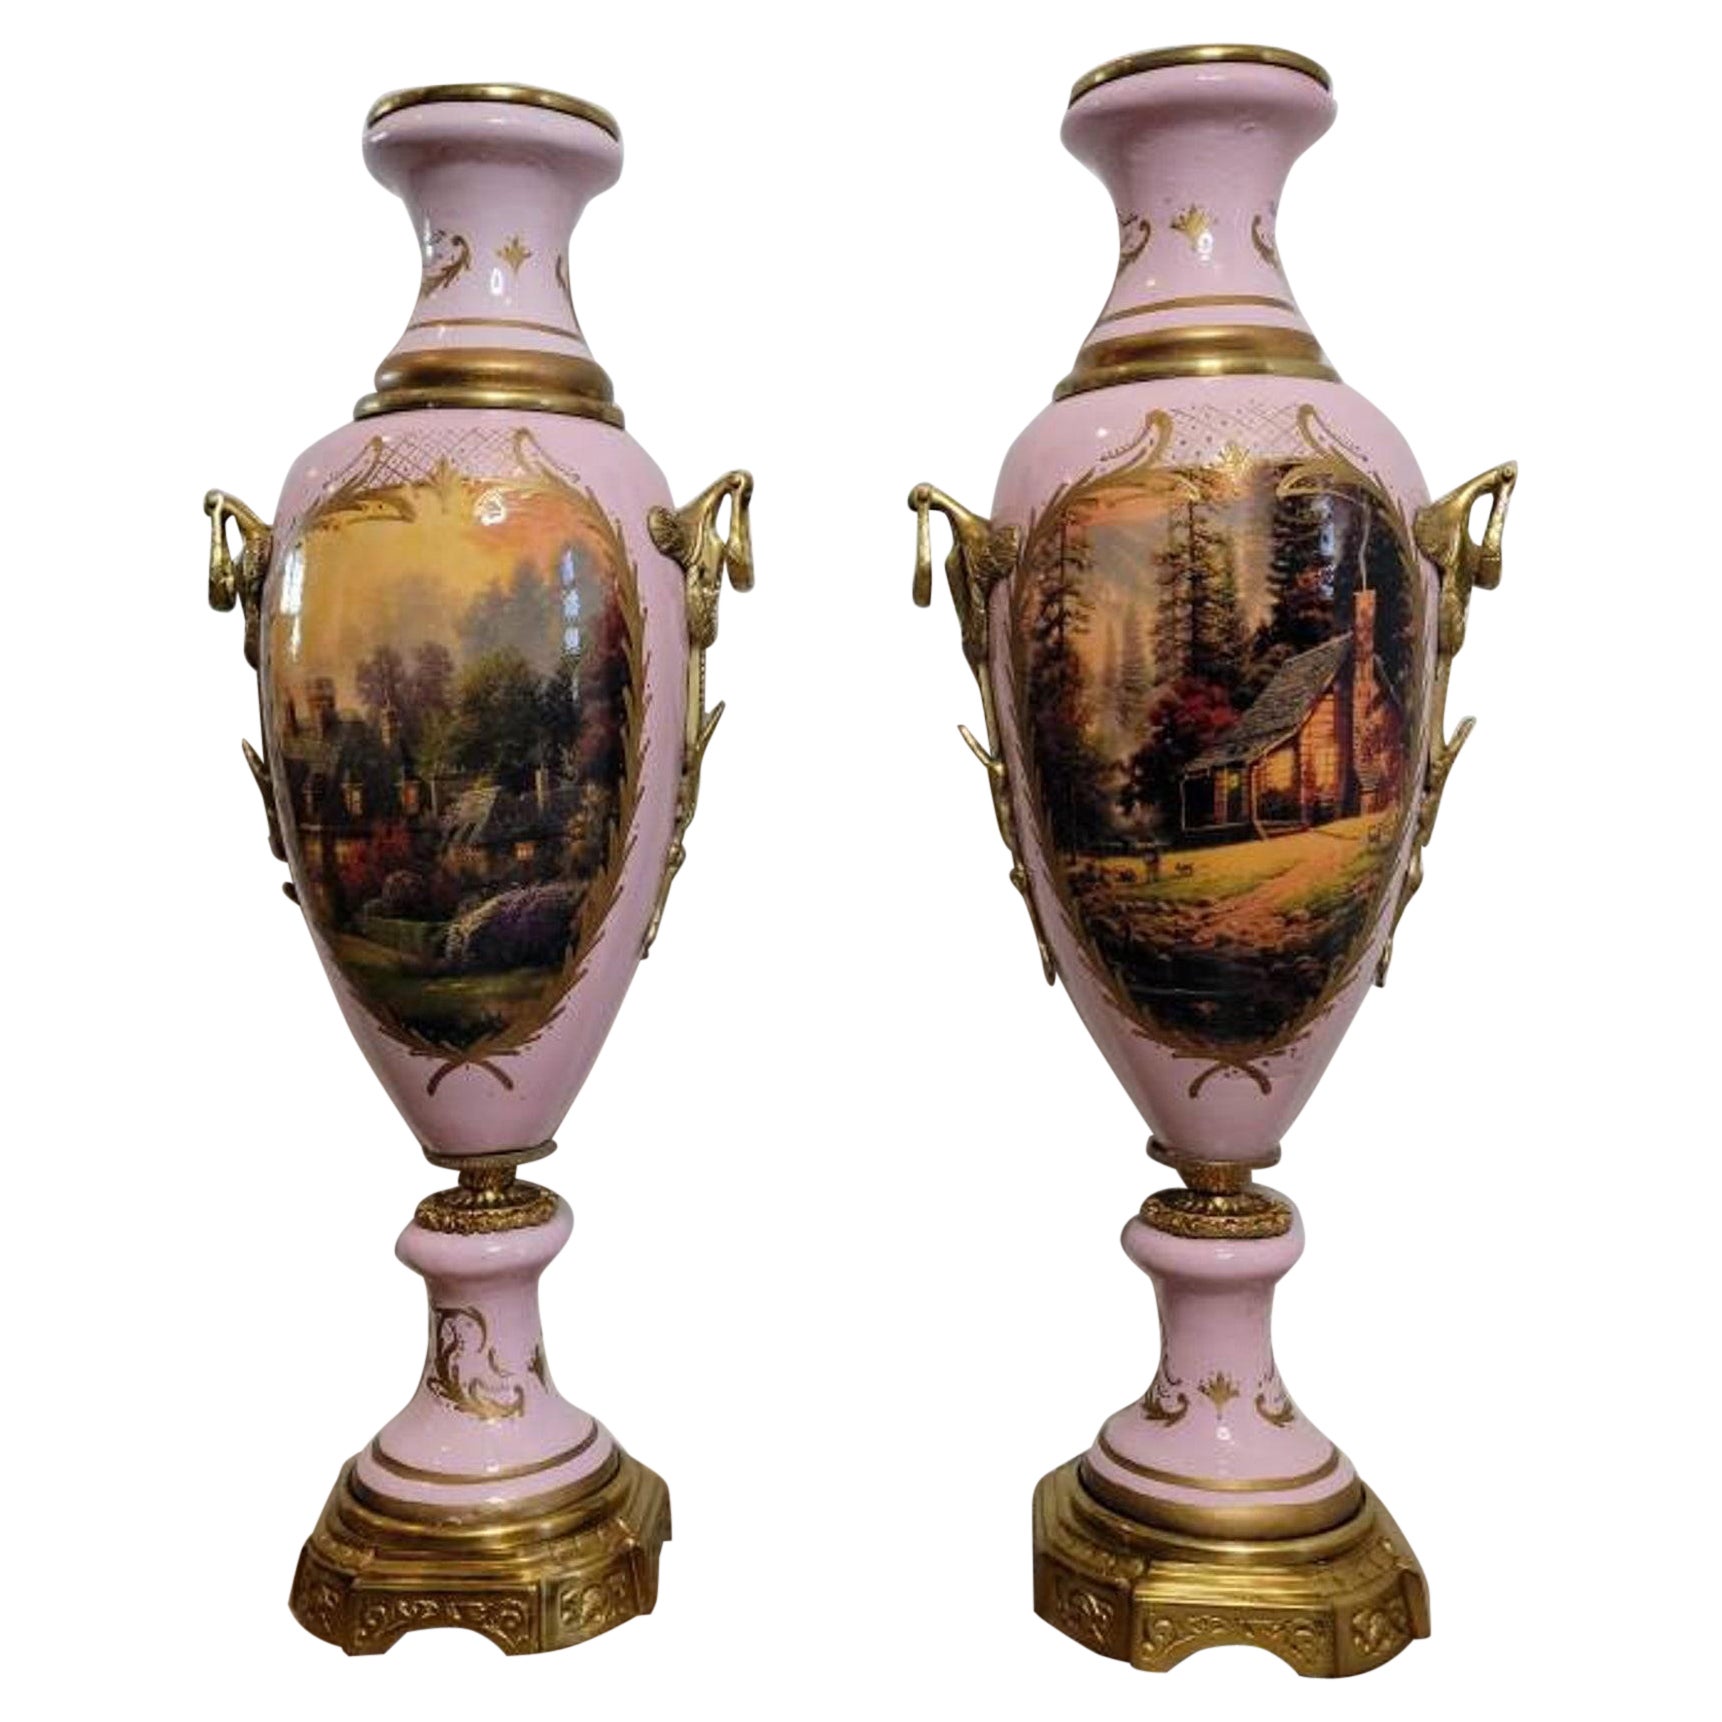 Monumentale französische Empire-Porzellanurnen im Svres-Stil des 19. Jahrhunderts, ein Paar